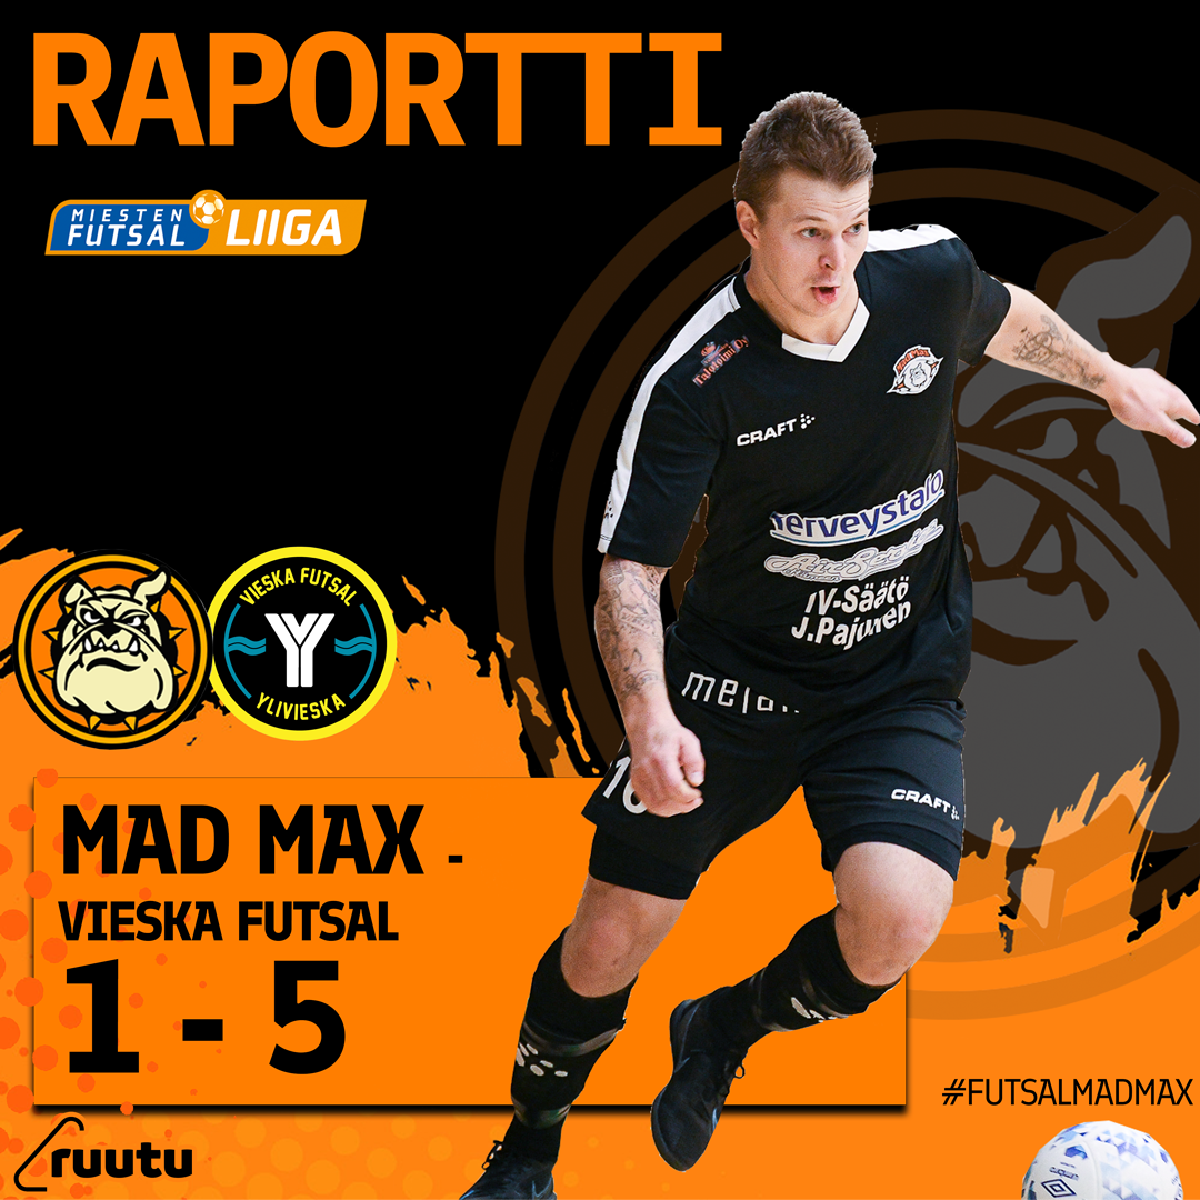 Mad Max taipui Vieska Futsalin vauhdissa